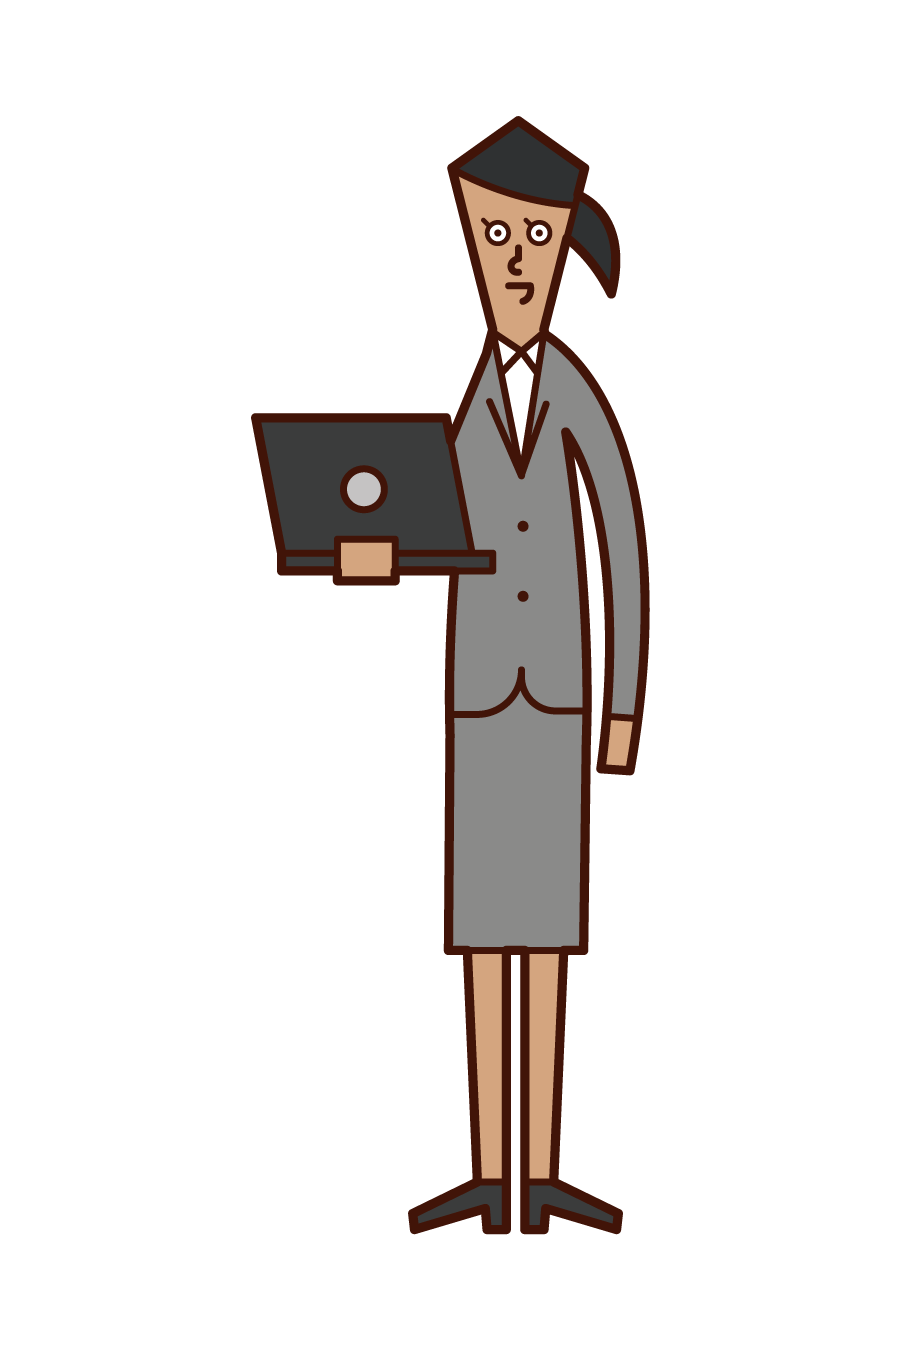 컴퓨터를 가진 사람 (여성)의 그림